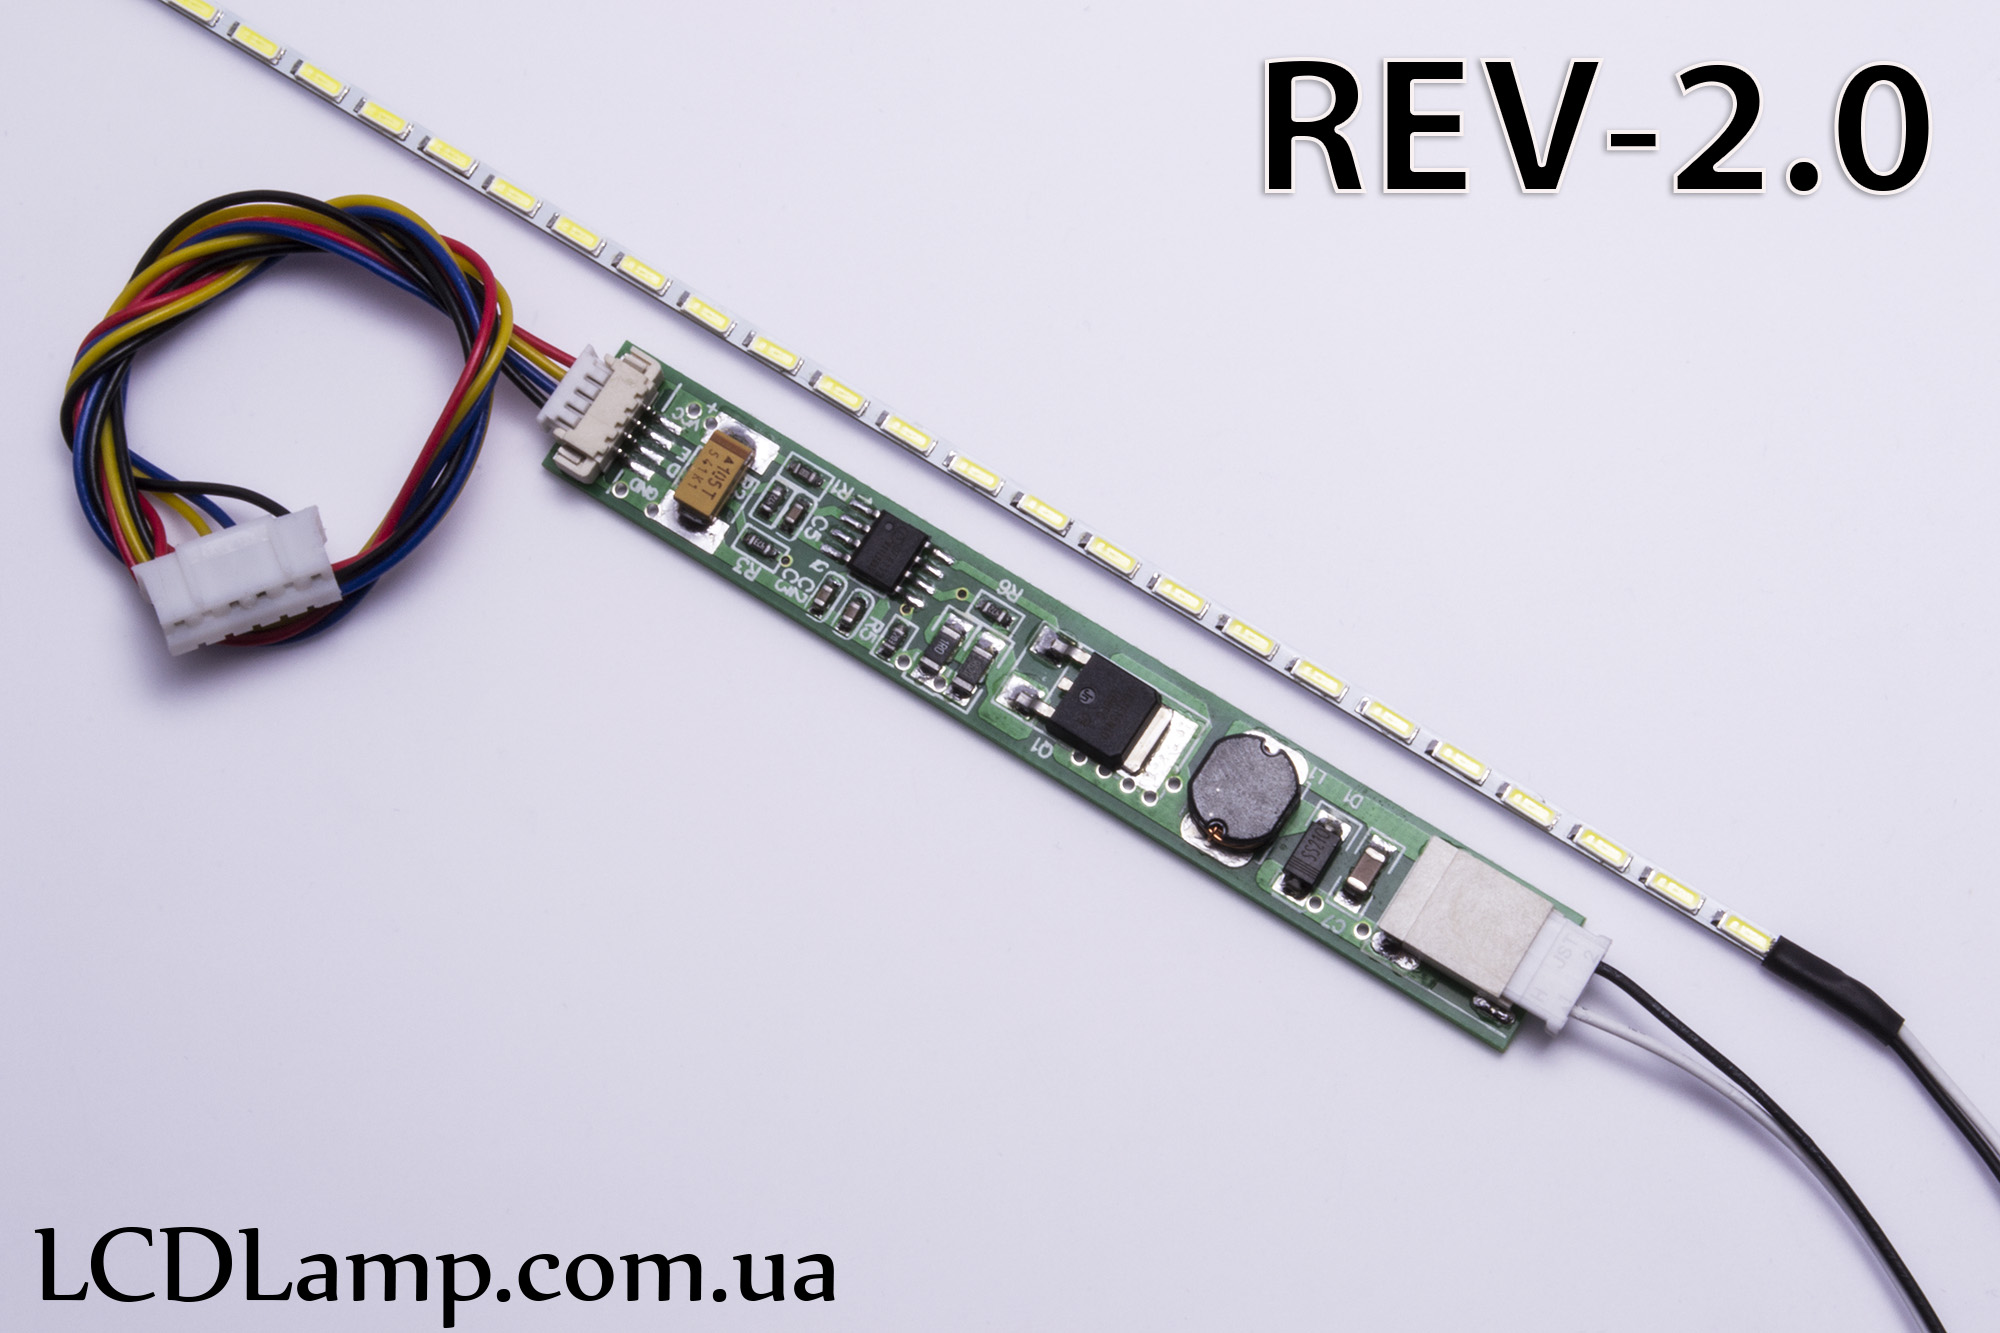 LED набор для ноутбука Rev-2.0(371мм.)